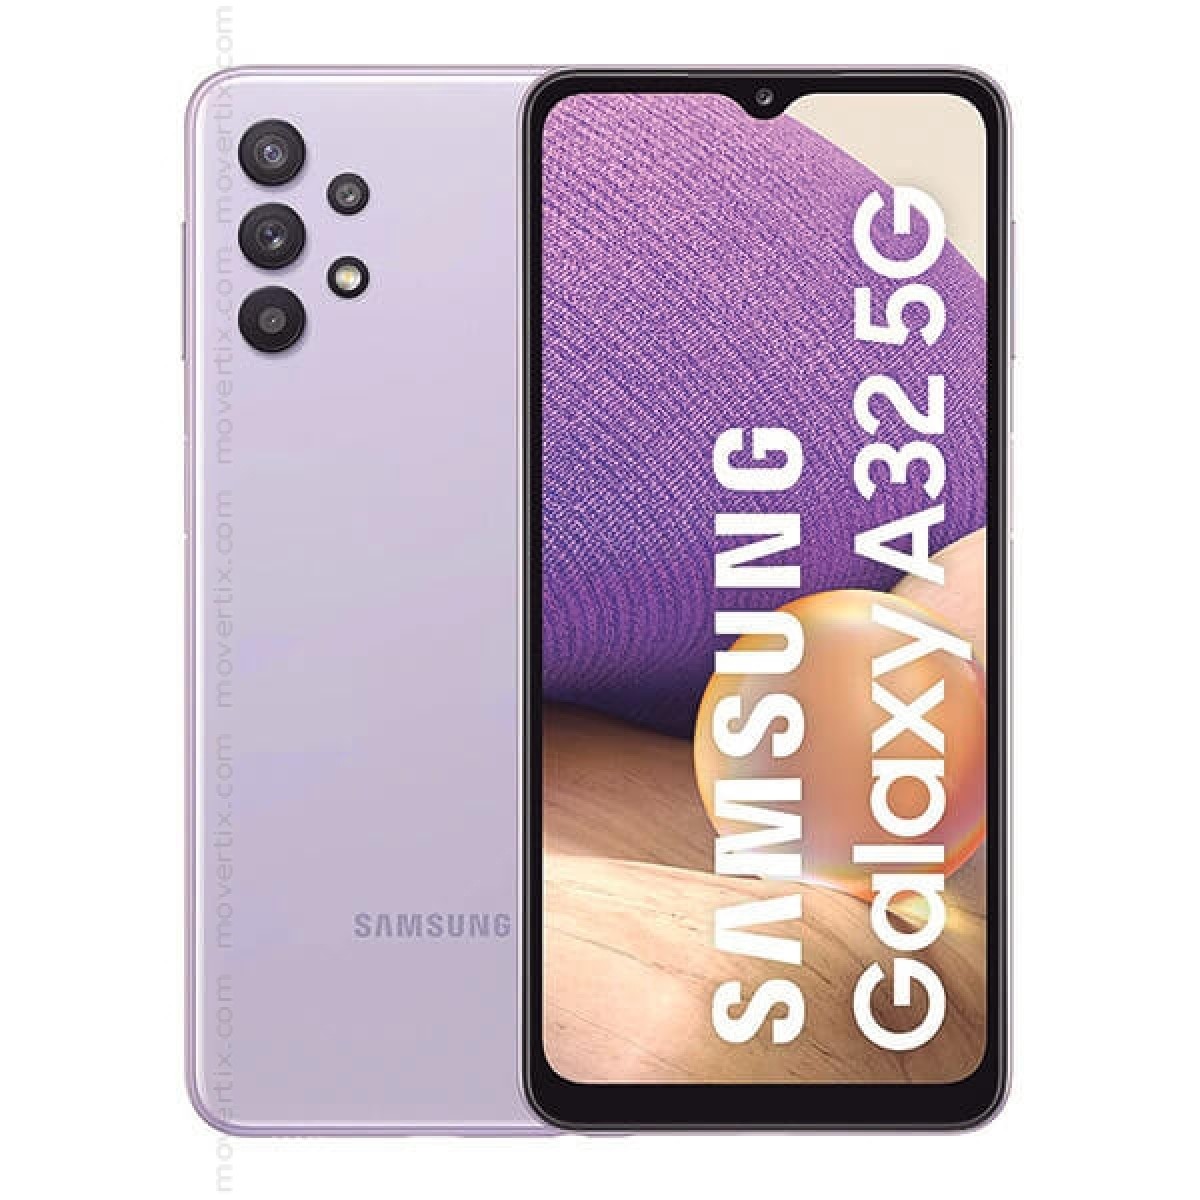 Samsung Galaxy A32 5G Dual SIM Awesome Violet 128GB and 4GB RAM - SM ...
